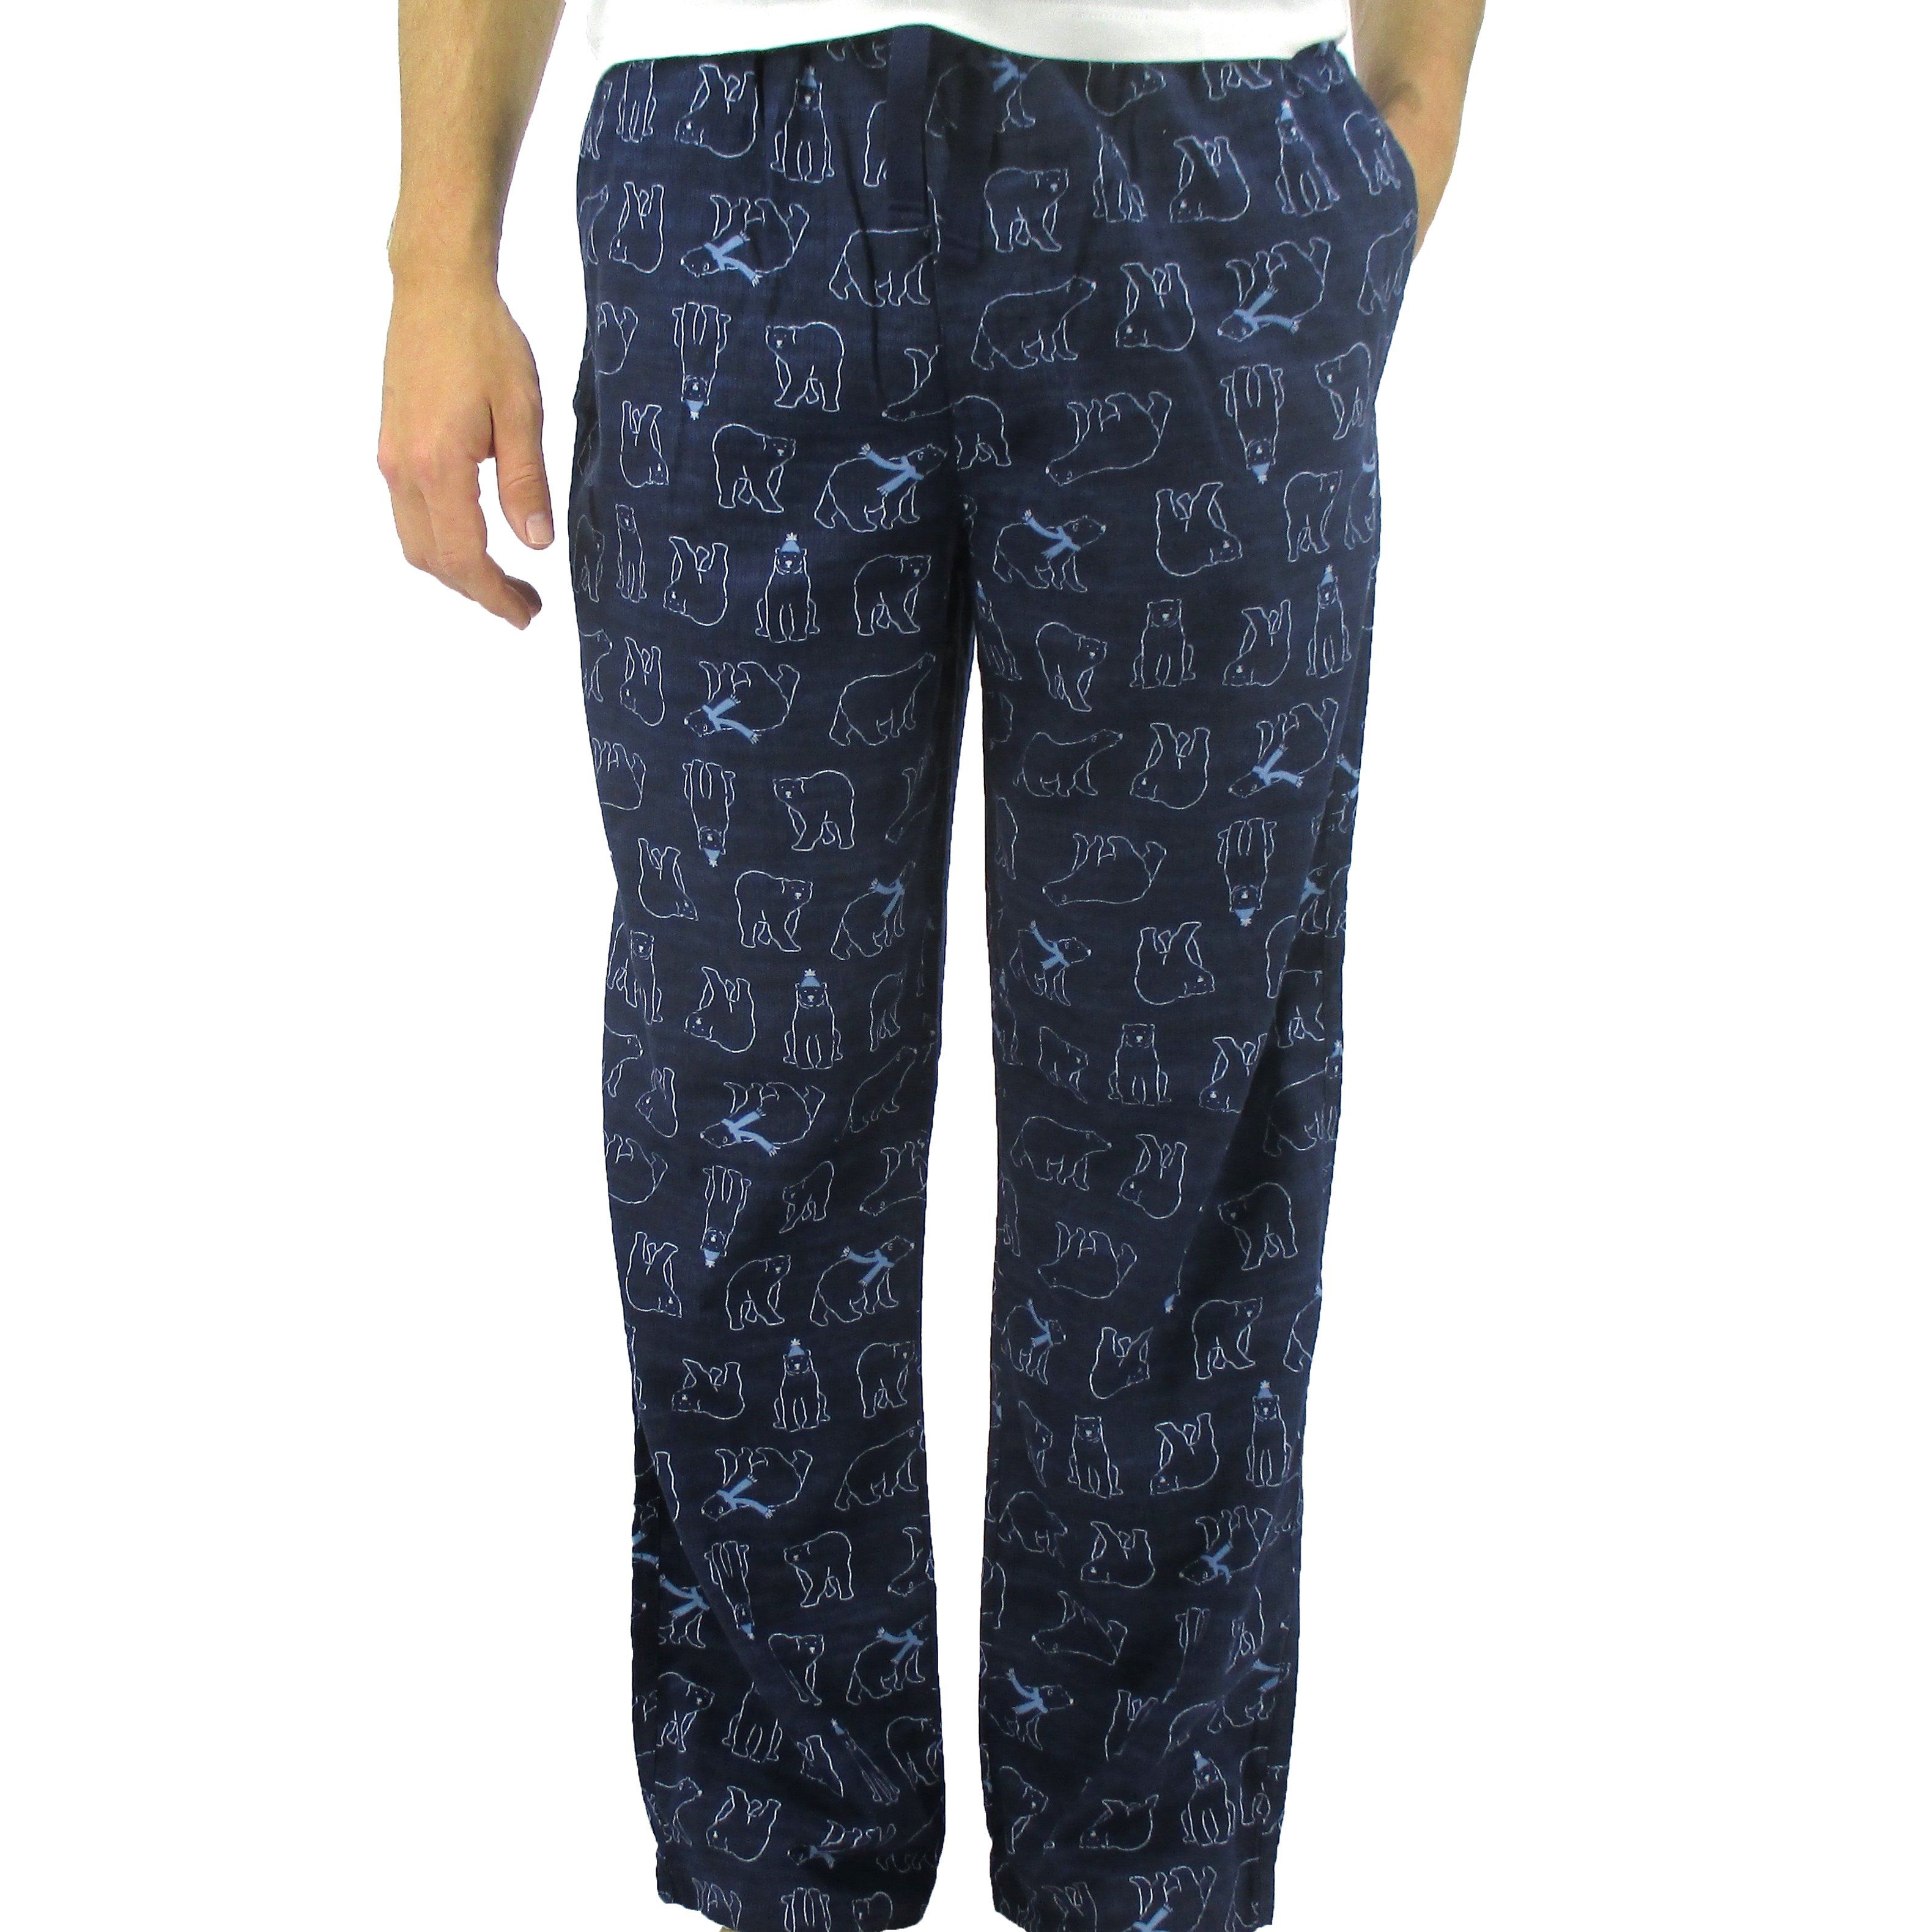 Comfy Soft Lounge Sleep Pants. PJ Pajama Bottoms for Men with Drawstring and Polar Bear Print